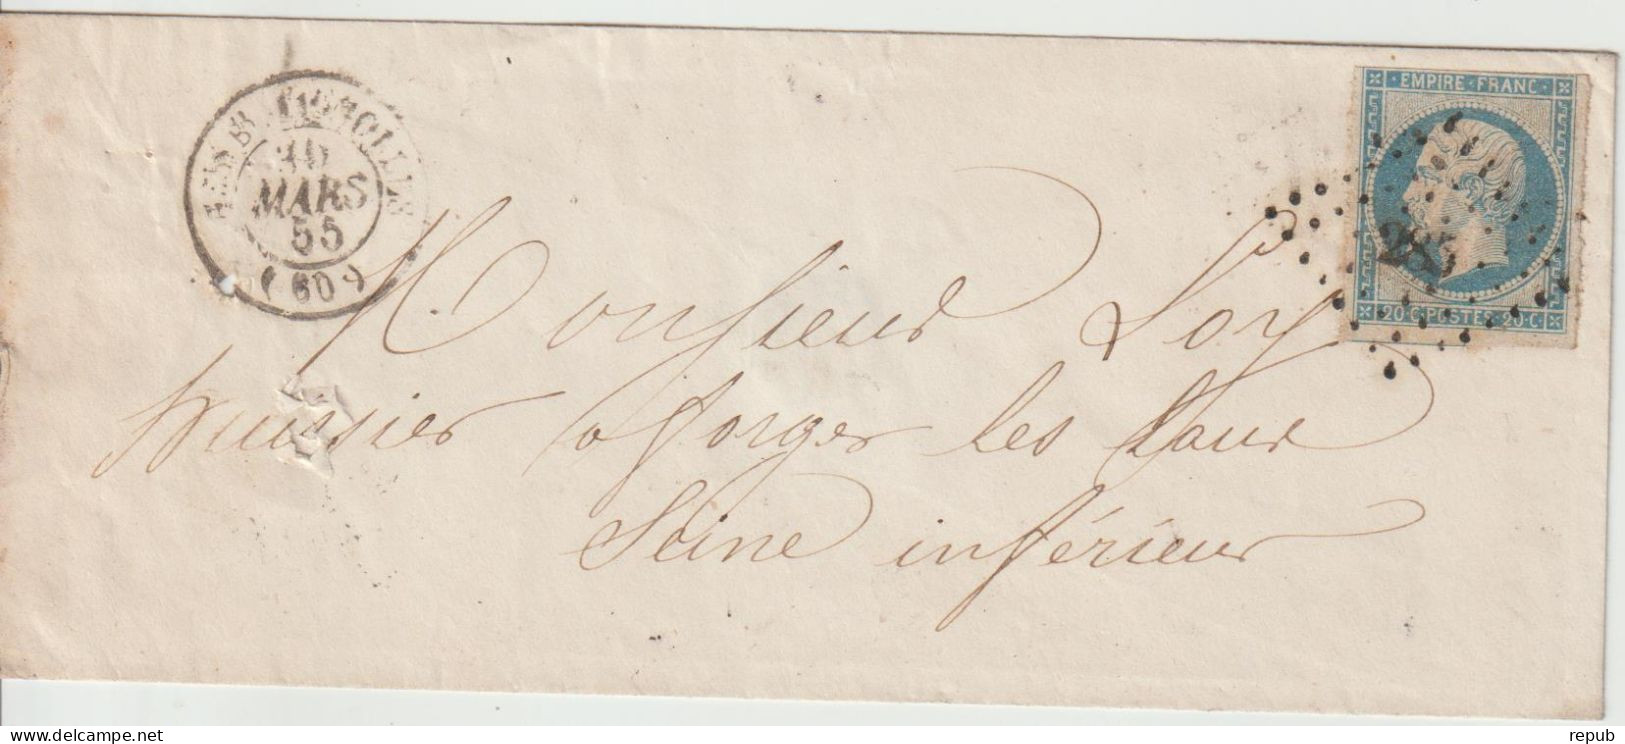 France Lettre 1865 De Paris Batignolles PC285  Pour Forges (76) - 1849-1876: Période Classique